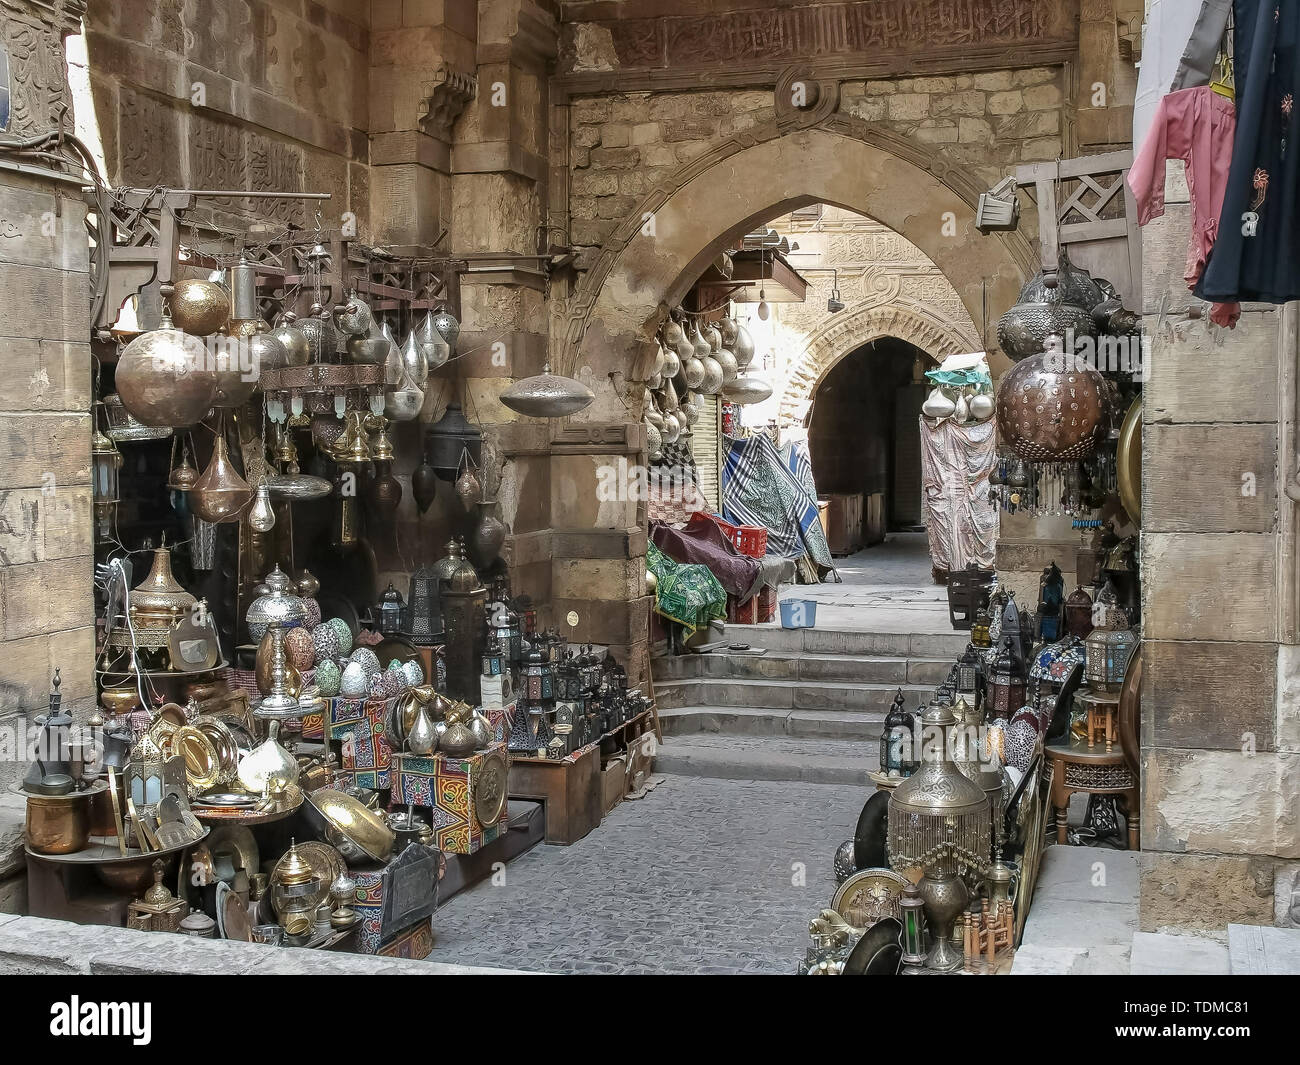 Mercado de Khan el khalili, en el Cairo, Egipto Foto de stock